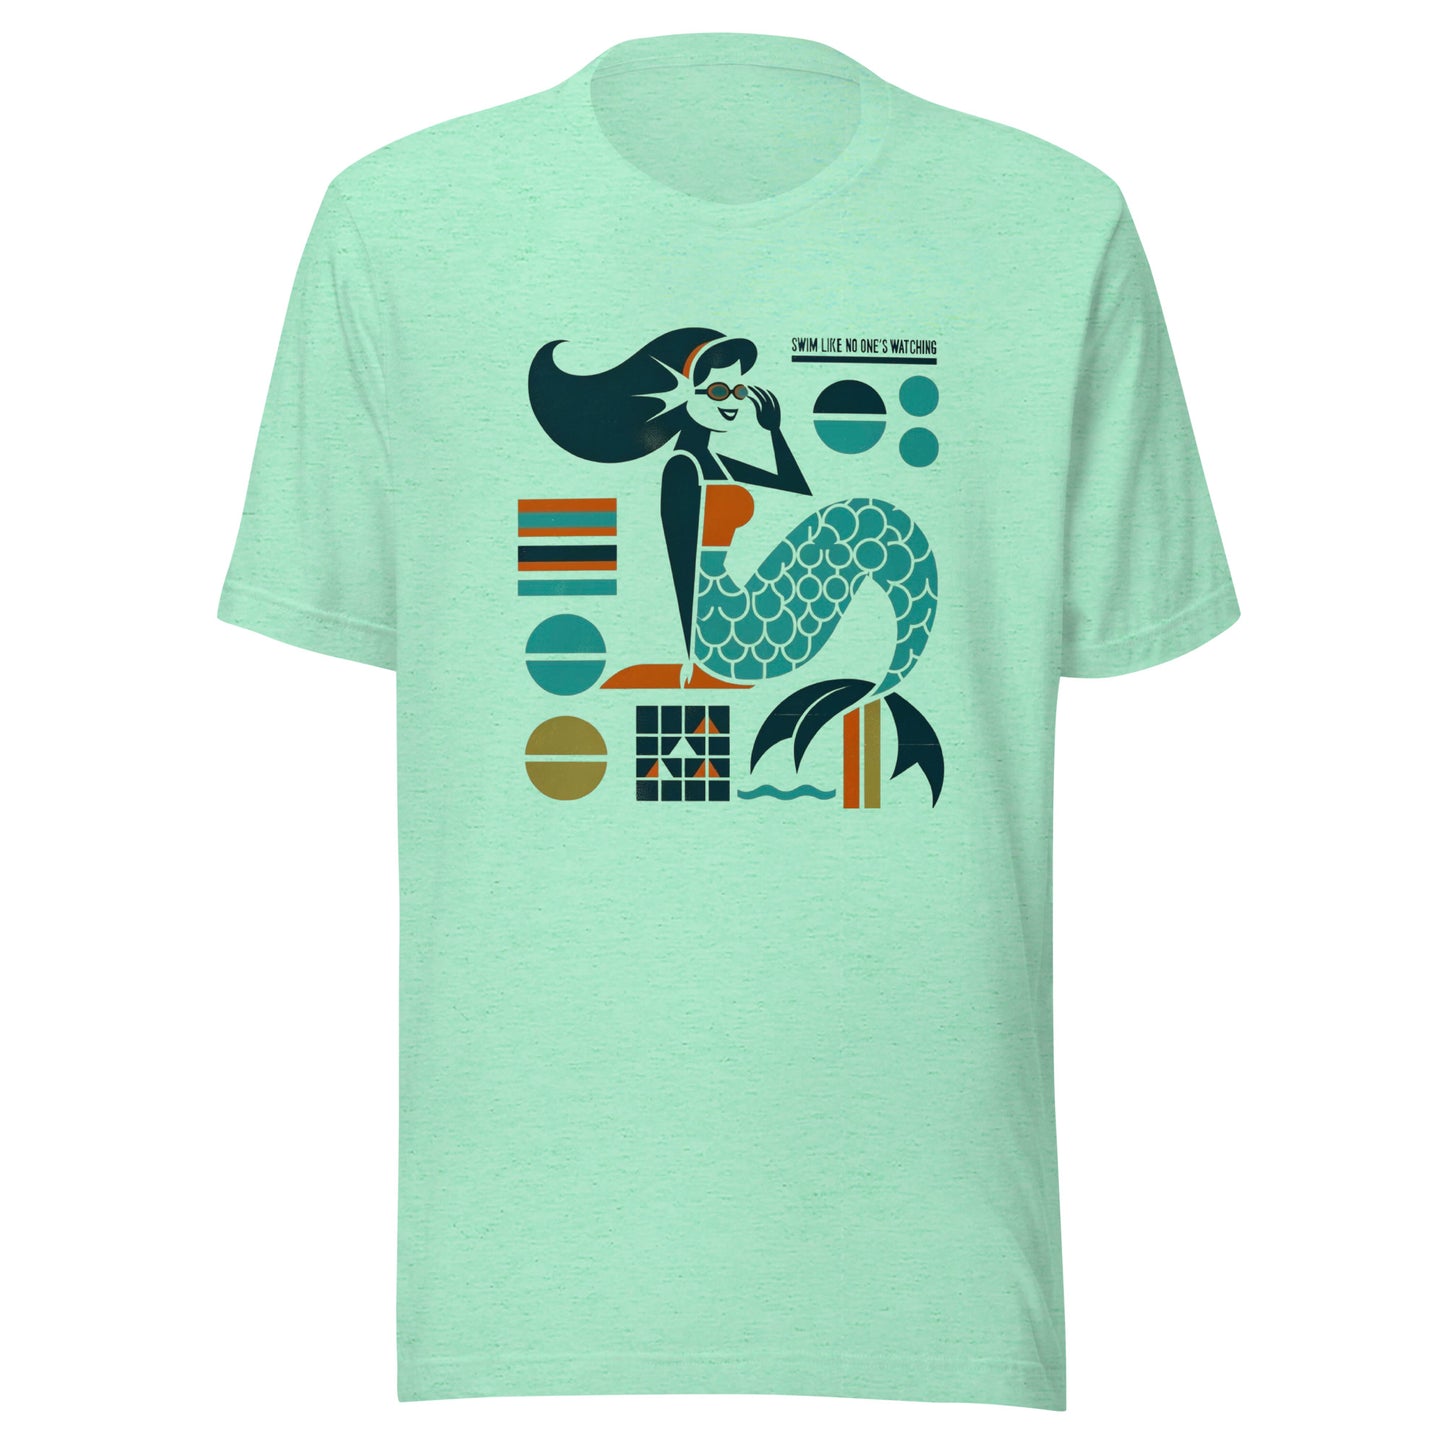 Mermaid Aquatics - Swim Like No One's Watching Unisex t-shirt